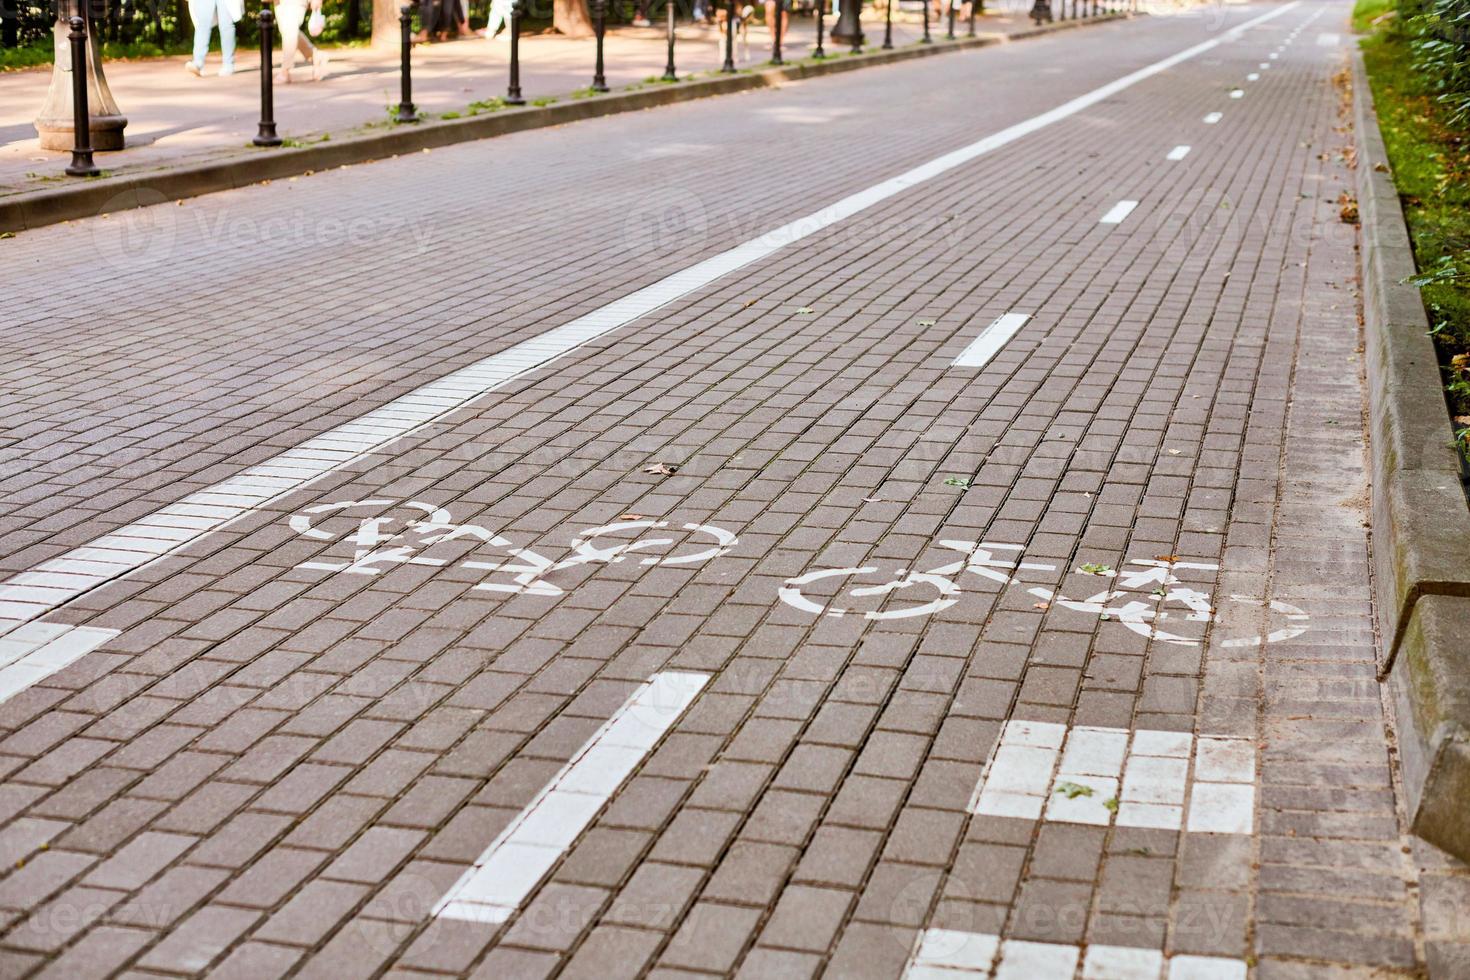 carril bici bidireccional, carril bici marcado en la acera, señal de bicicleta pintada de blanco en la carretera, símbolo de ciclo foto